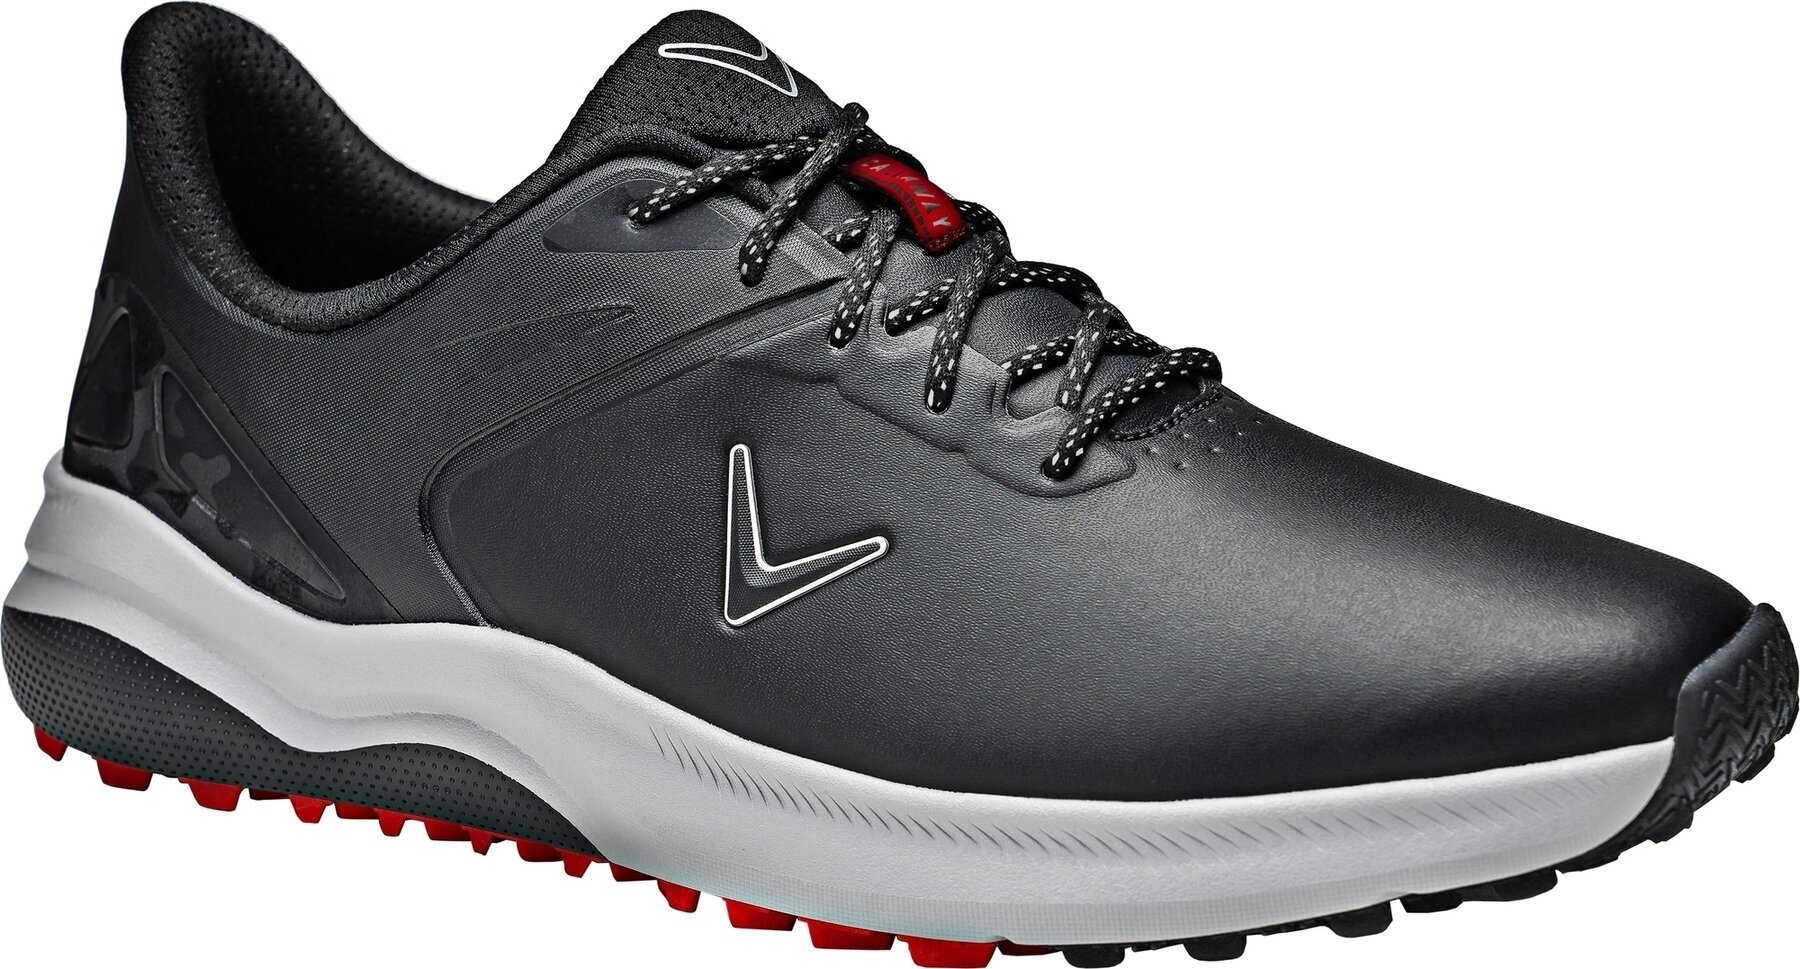 Ανδρικό Παπούτσι για Γκολφ Callaway Lazer Mens Golf Shoes Μαύρο 44,5